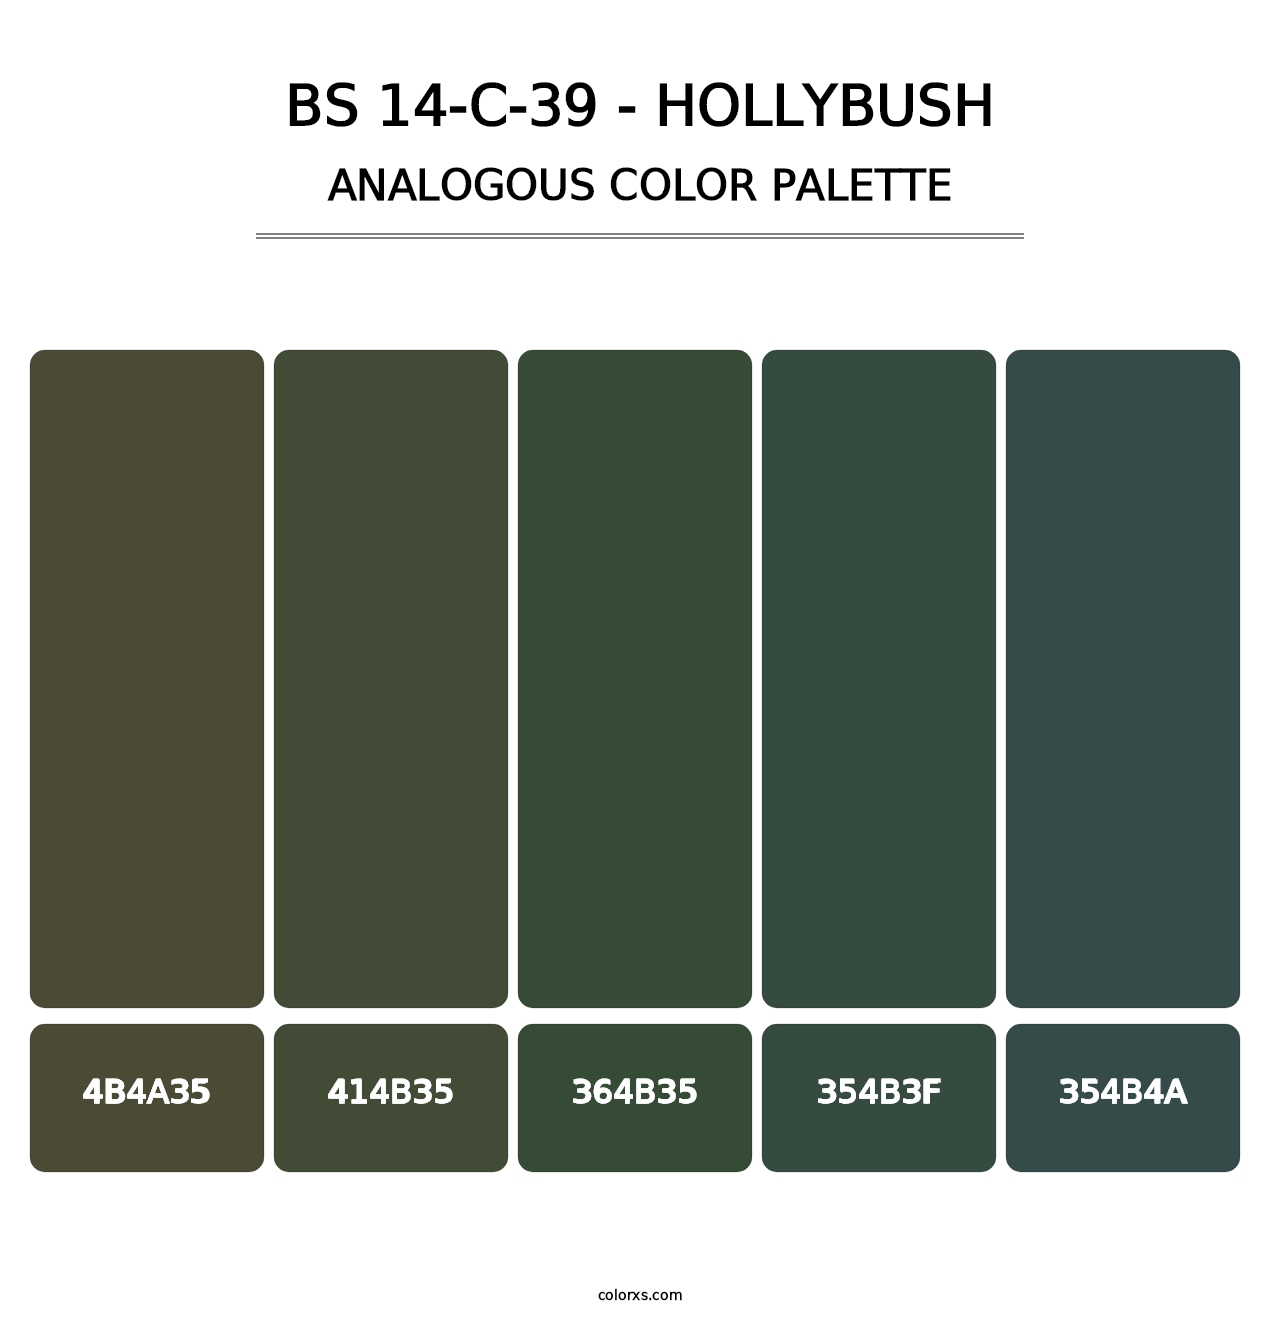 BS 14-C-39 - Hollybush - Analogous Color Palette